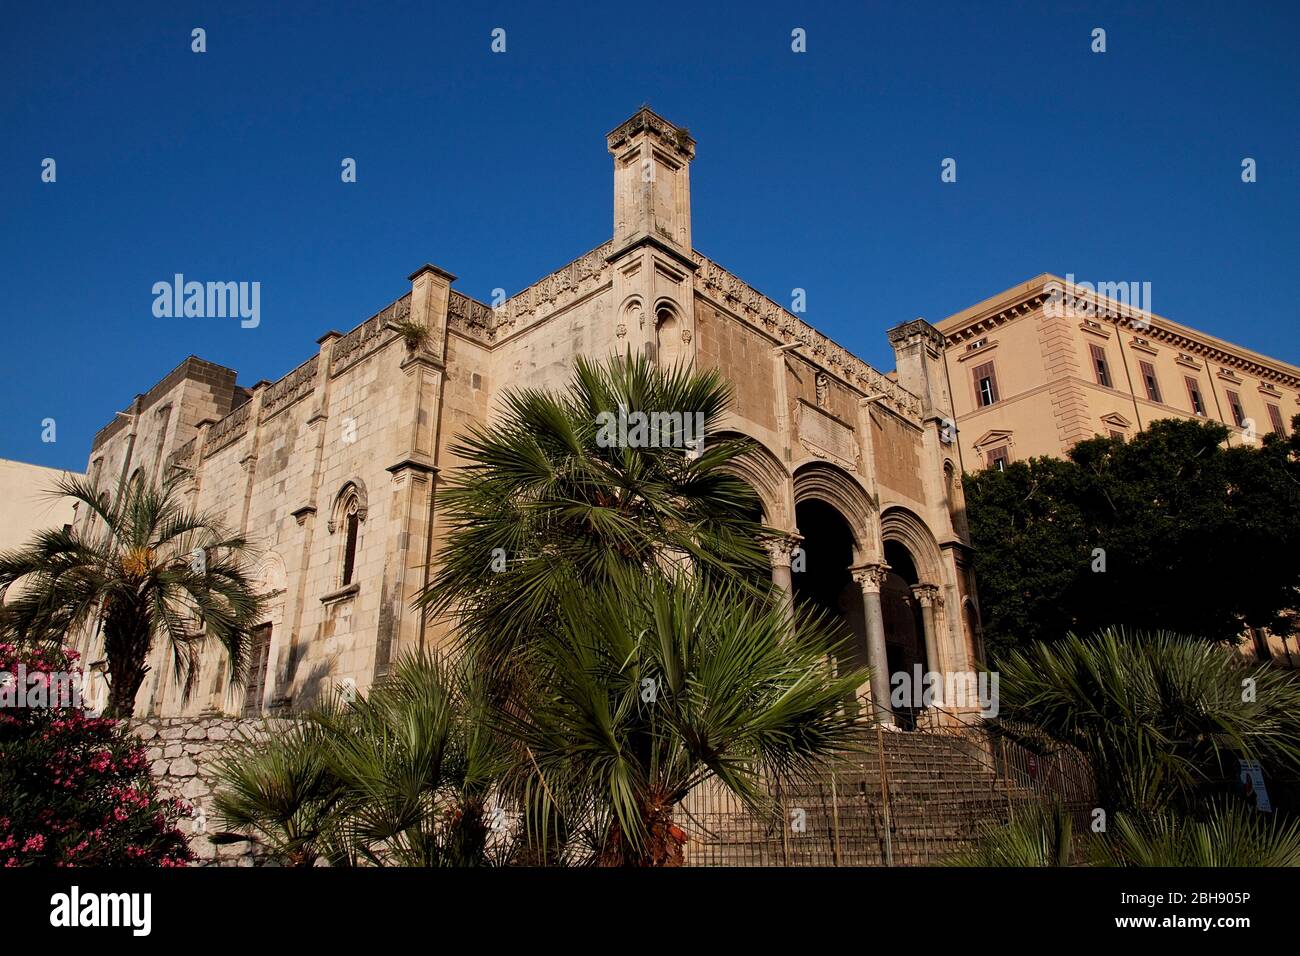 Palermo, casco antiguo, iglesia de Santa Maria della Catena, siglo XVI, gótico tardío catalán, vista exterior del porche con tres galerías Foto de stock